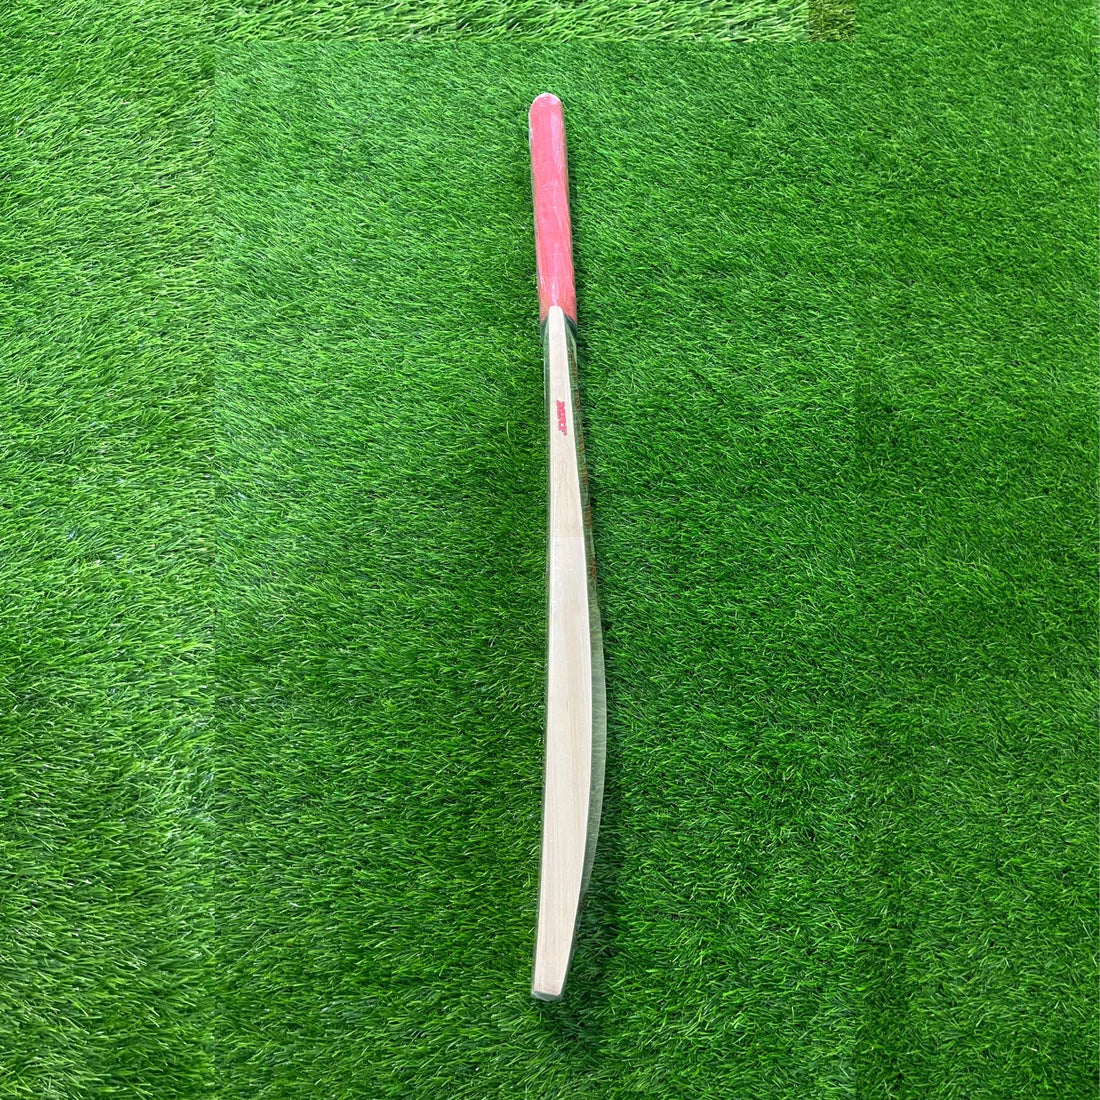 MRF KW CHAMP Kashmir Willow Cricket Bat - Junior Size 5 (Five)